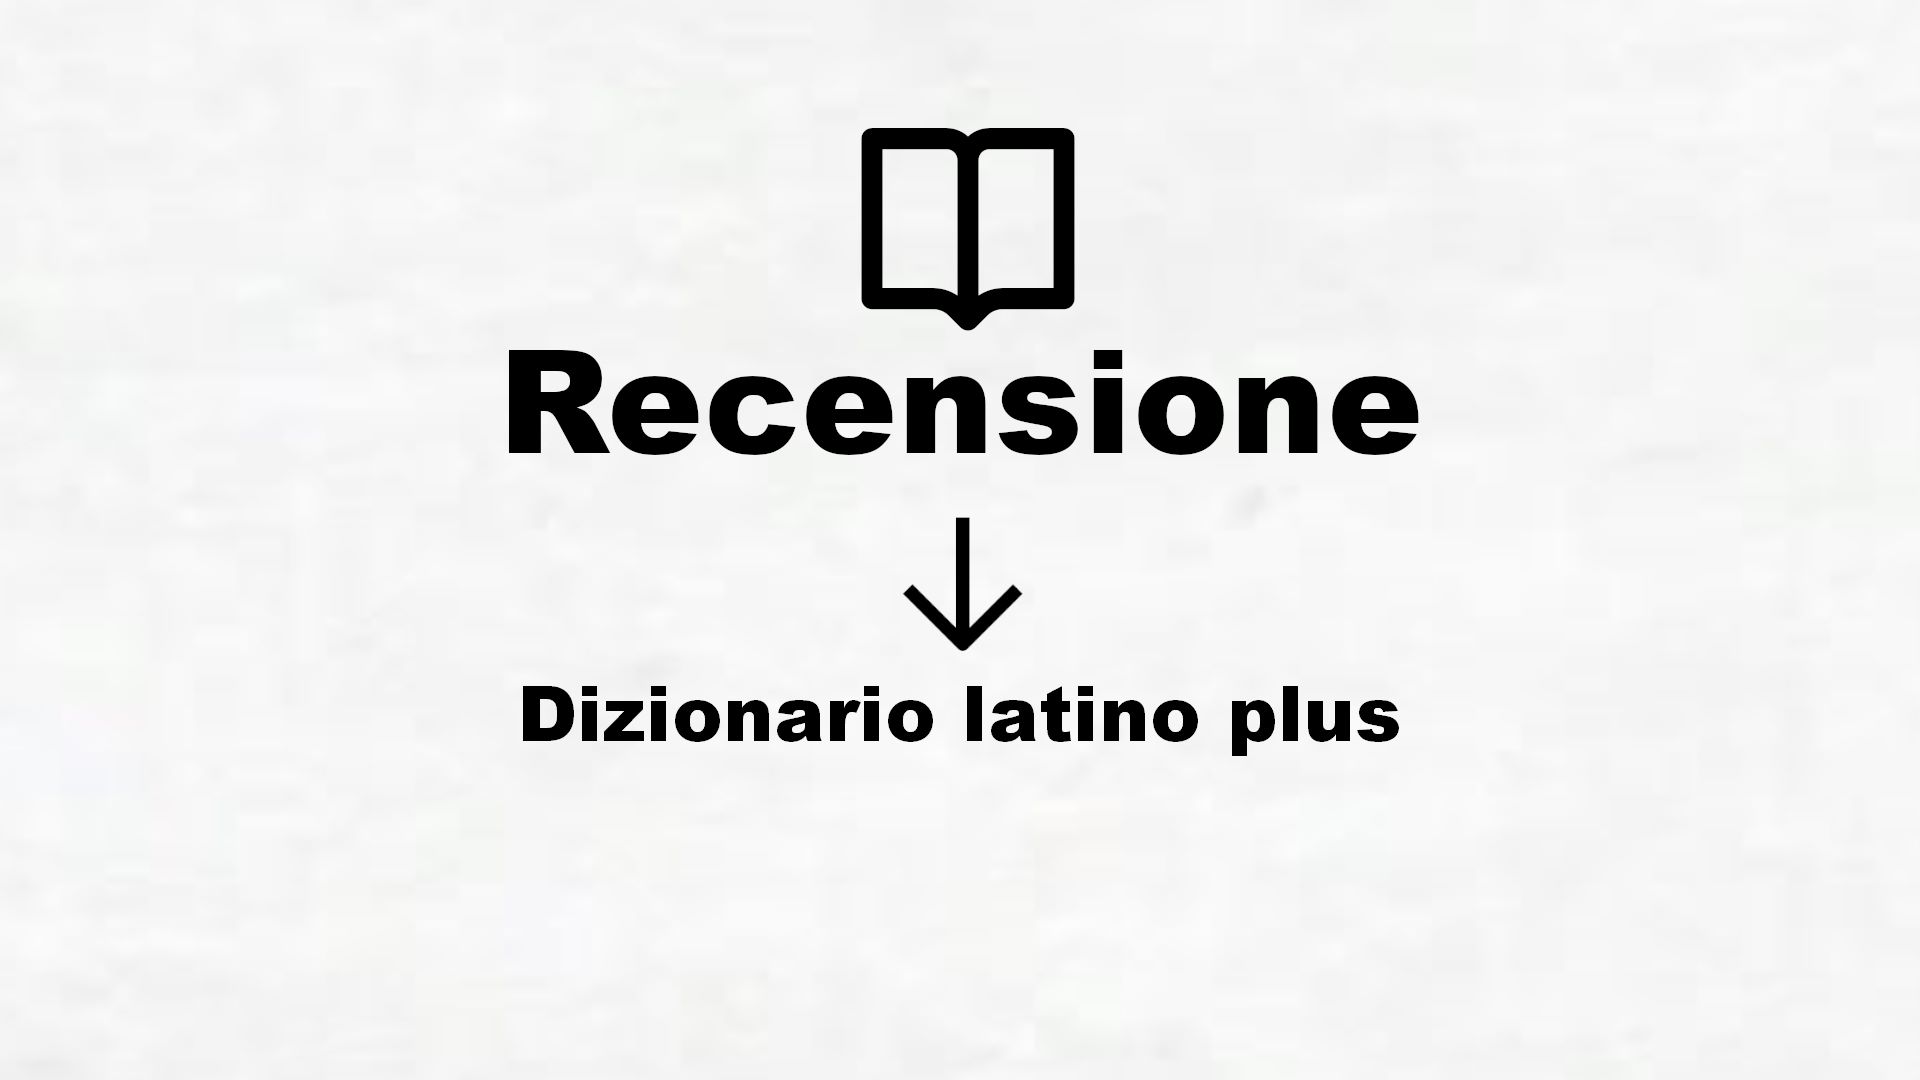 Dizionario latino plus – Recensione Libro